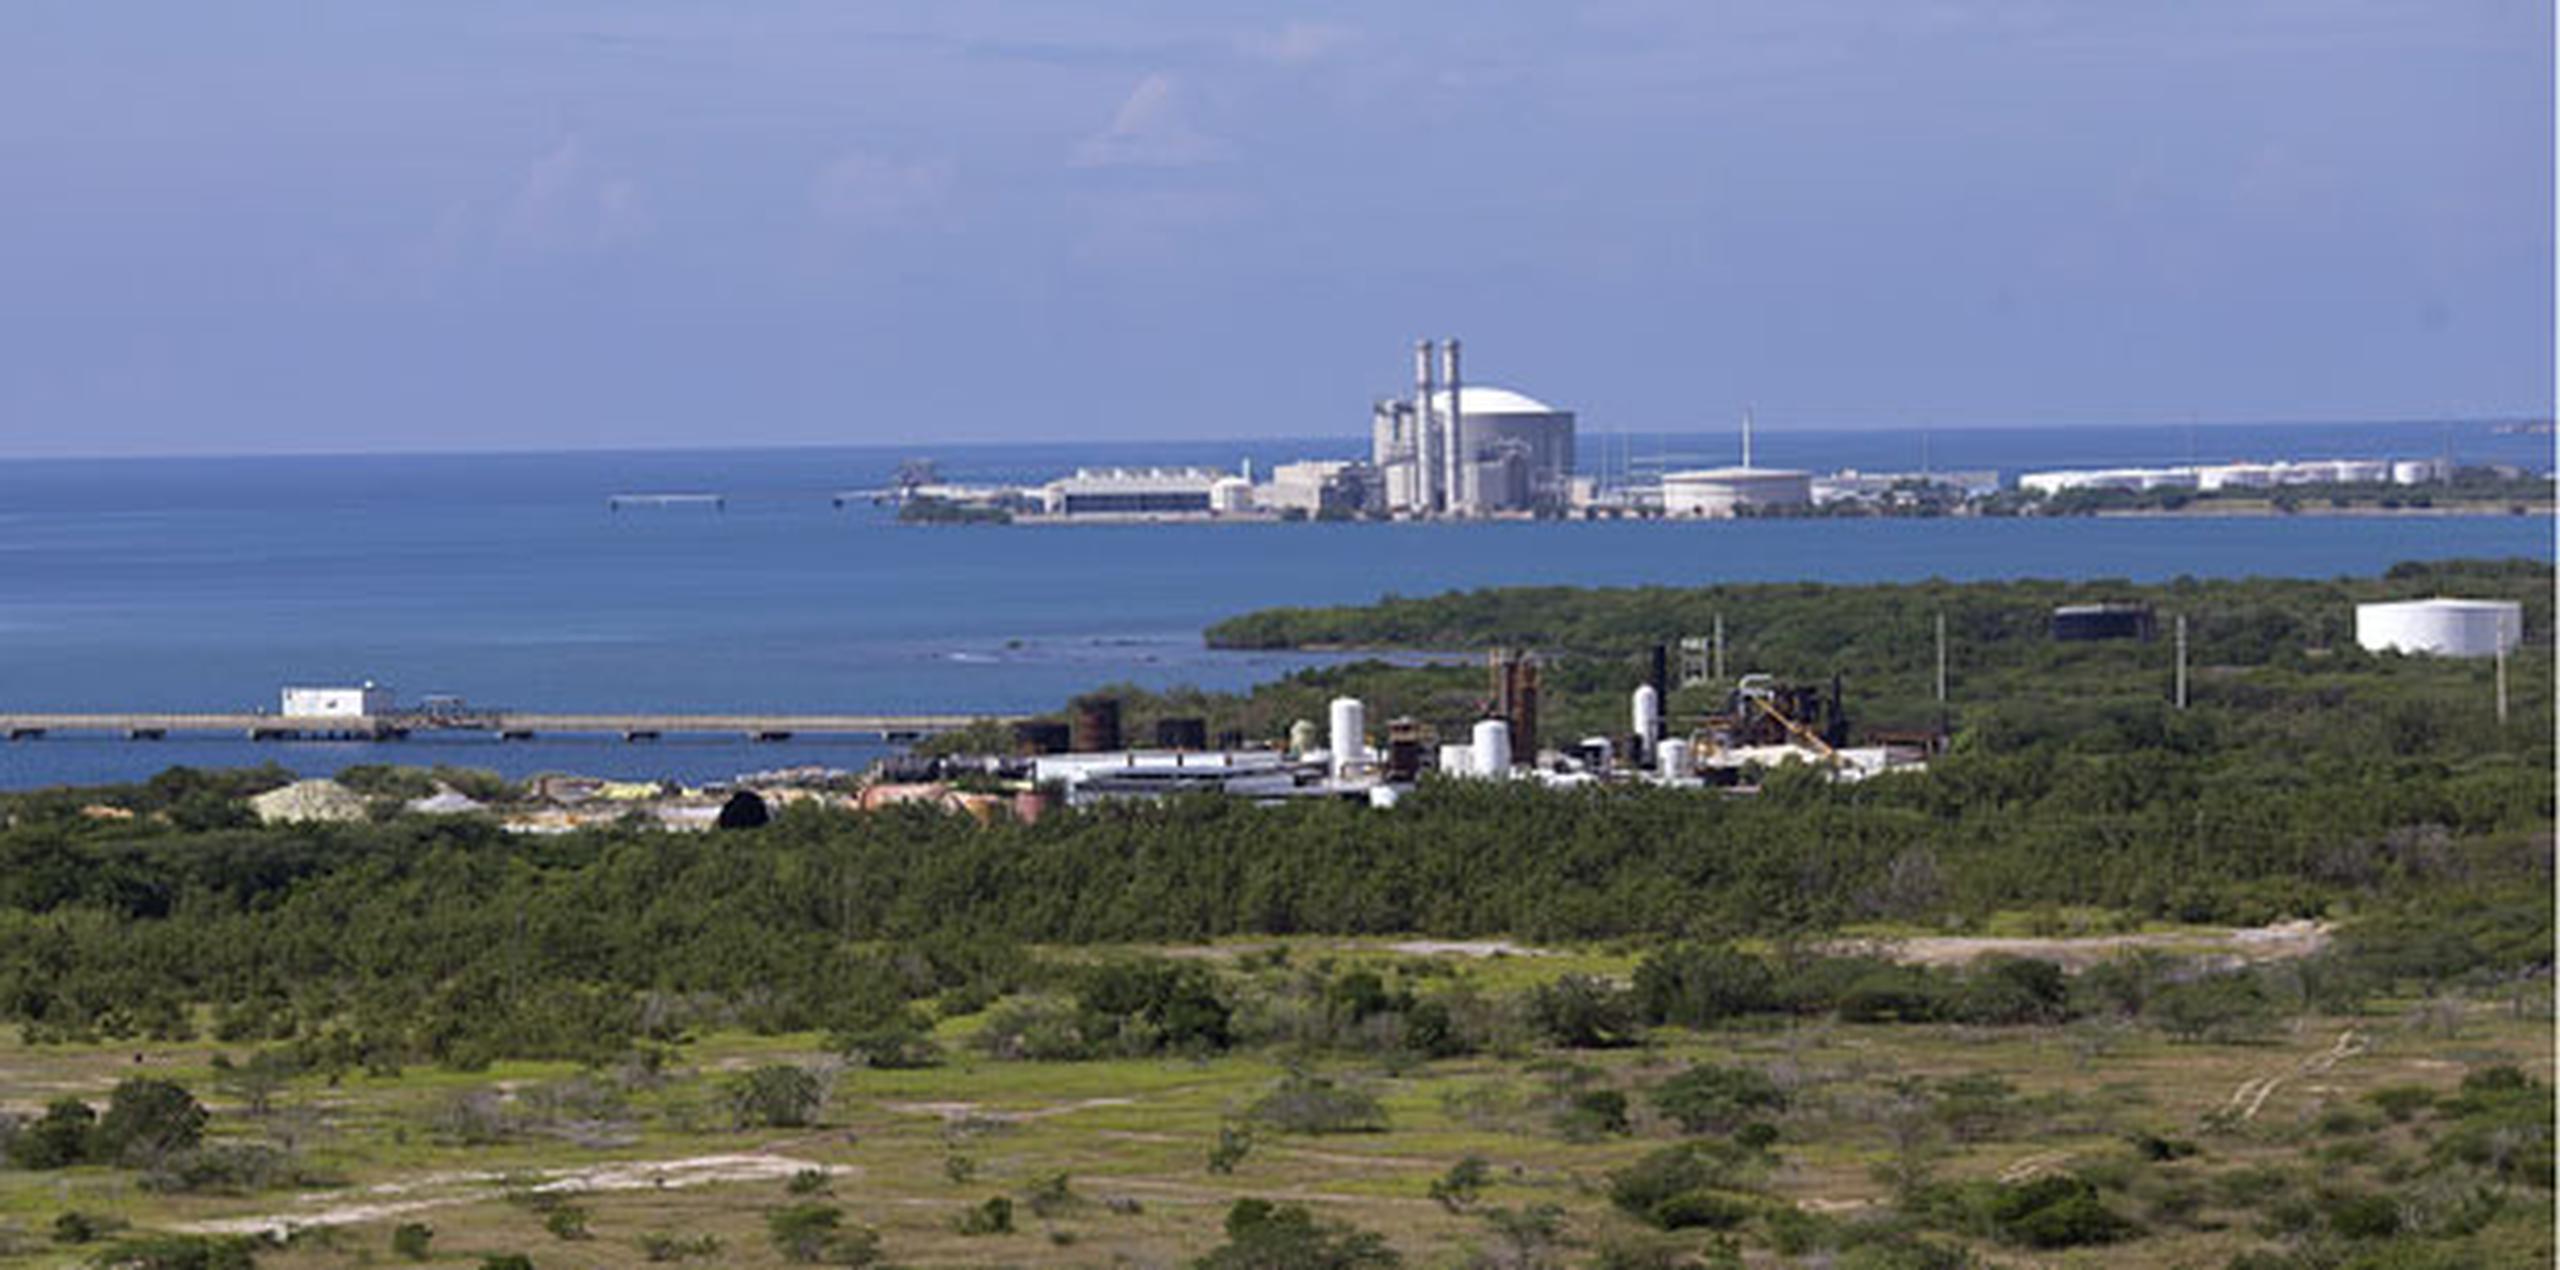 La planta cogeneradora de Ecoeléctrica, localizada en el barrio Tallaboa Poniente de Peñuelas, actualmente genera alrededor de unos 507 megavatios mediante tres turbinas, una de vapor y dos de gas natural licuado. (Archivo)